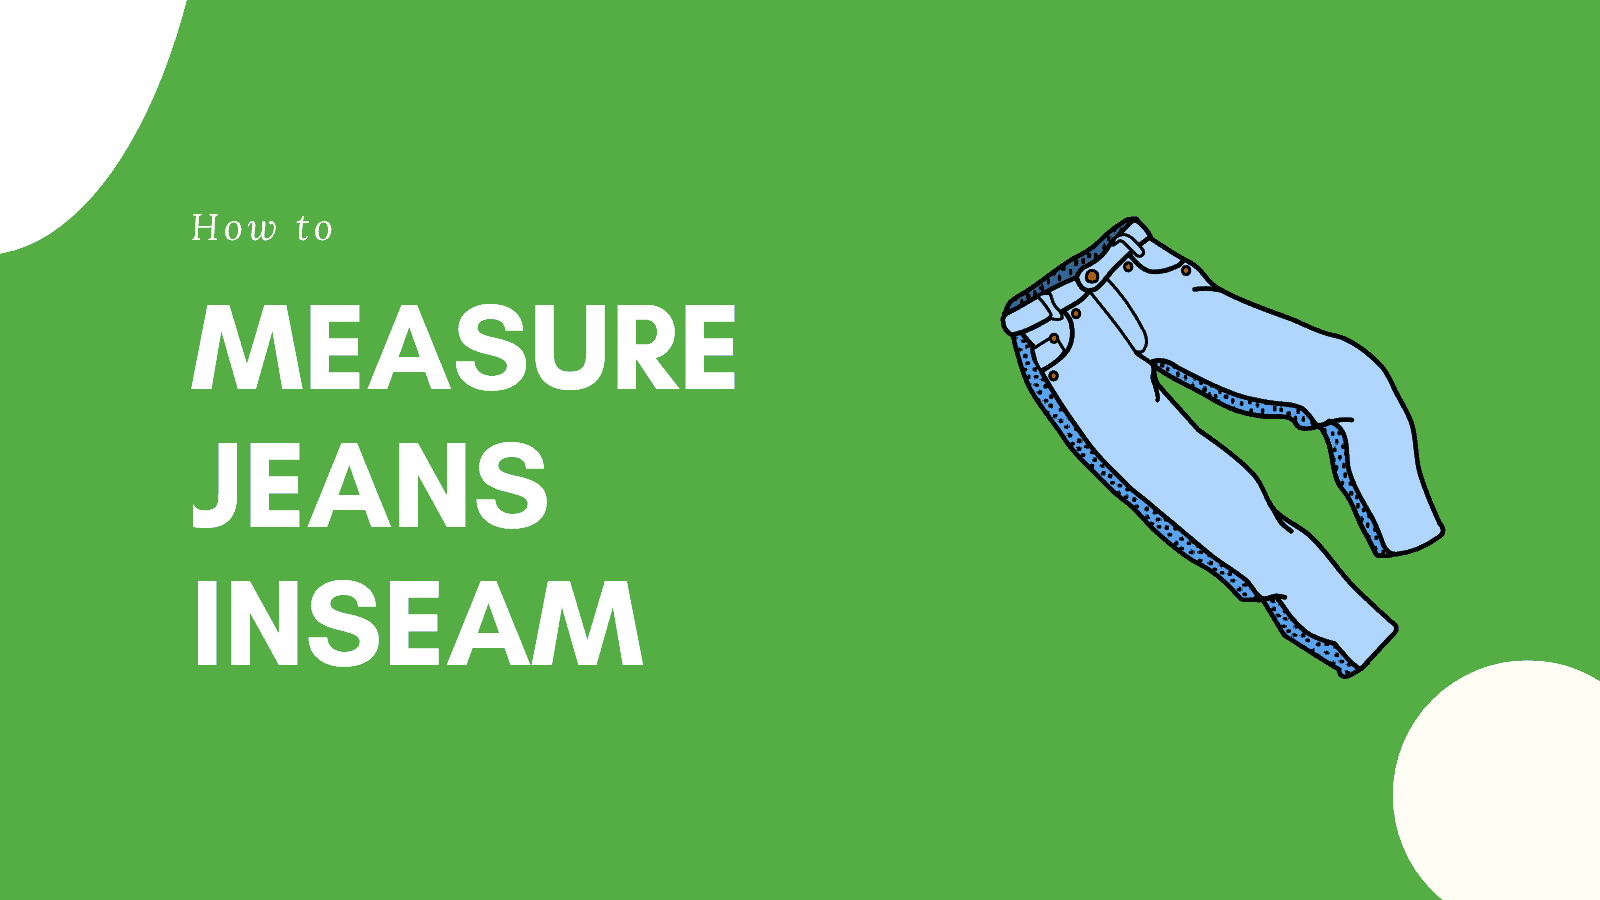 Measure Jeans inseam